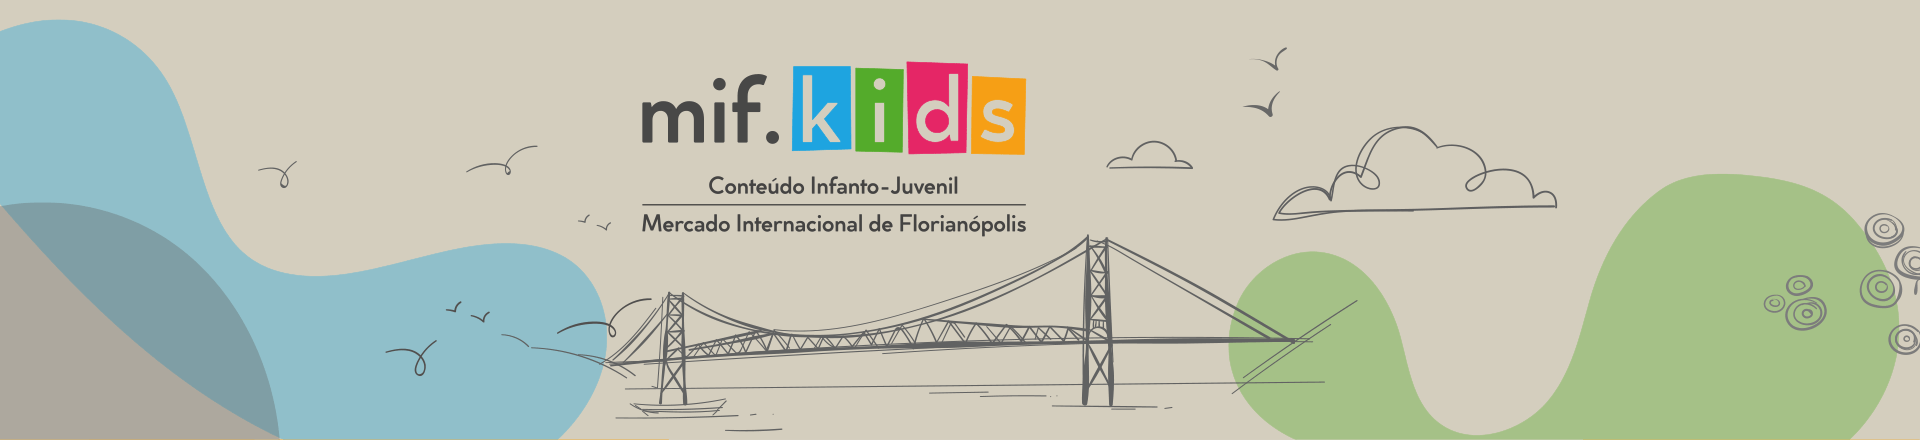 banner Mif.Kids - Mercado Internacional de Florianópolis | Conteúdo Infanto-juvenil